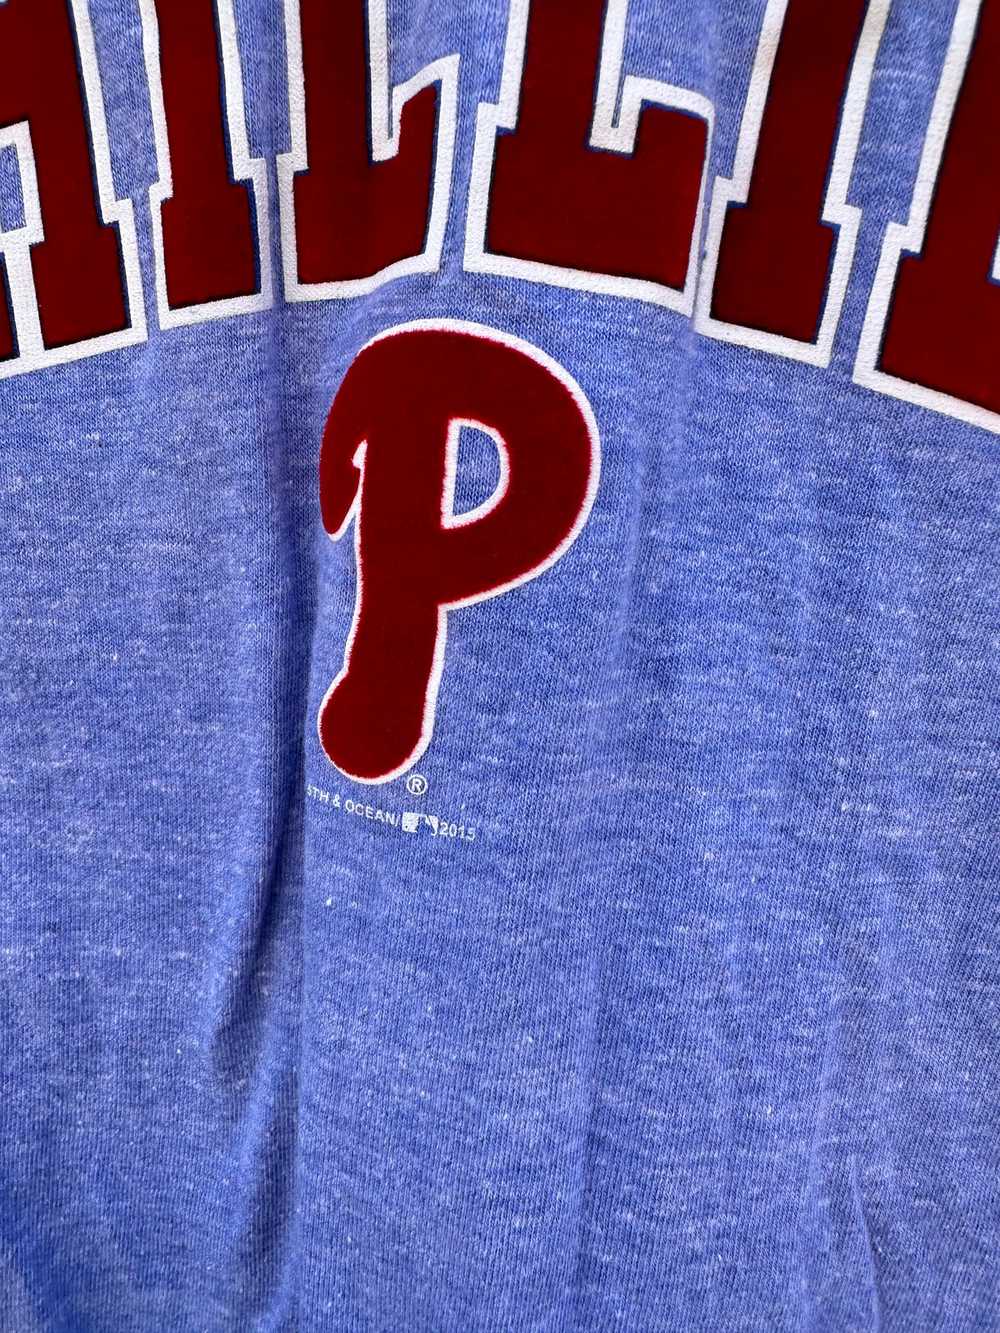 Philadelphia Philles V-neck T-shirt - image 2